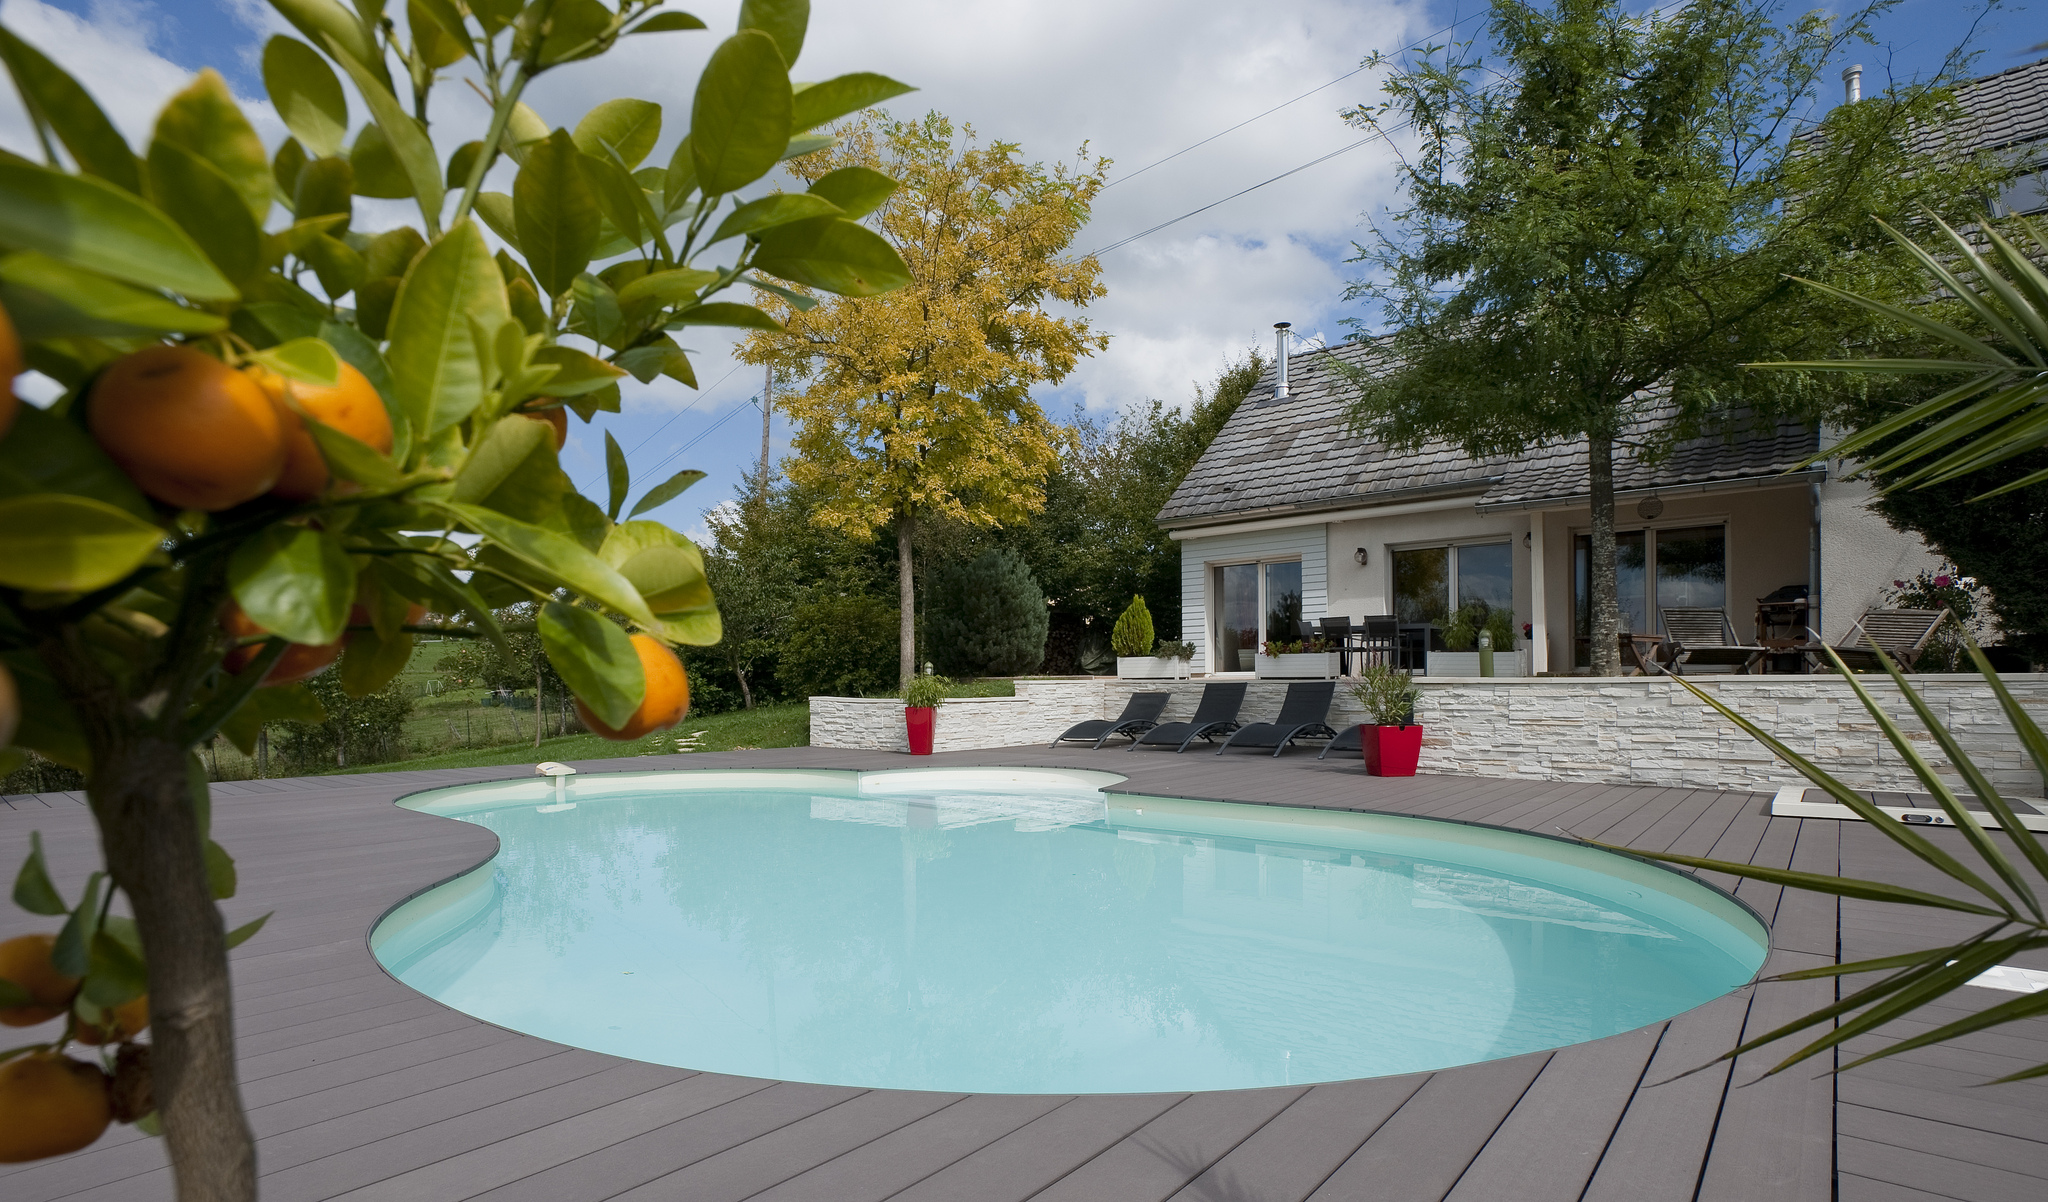 Le prix d'une piscine coque varie de 6000 à 25.000€.